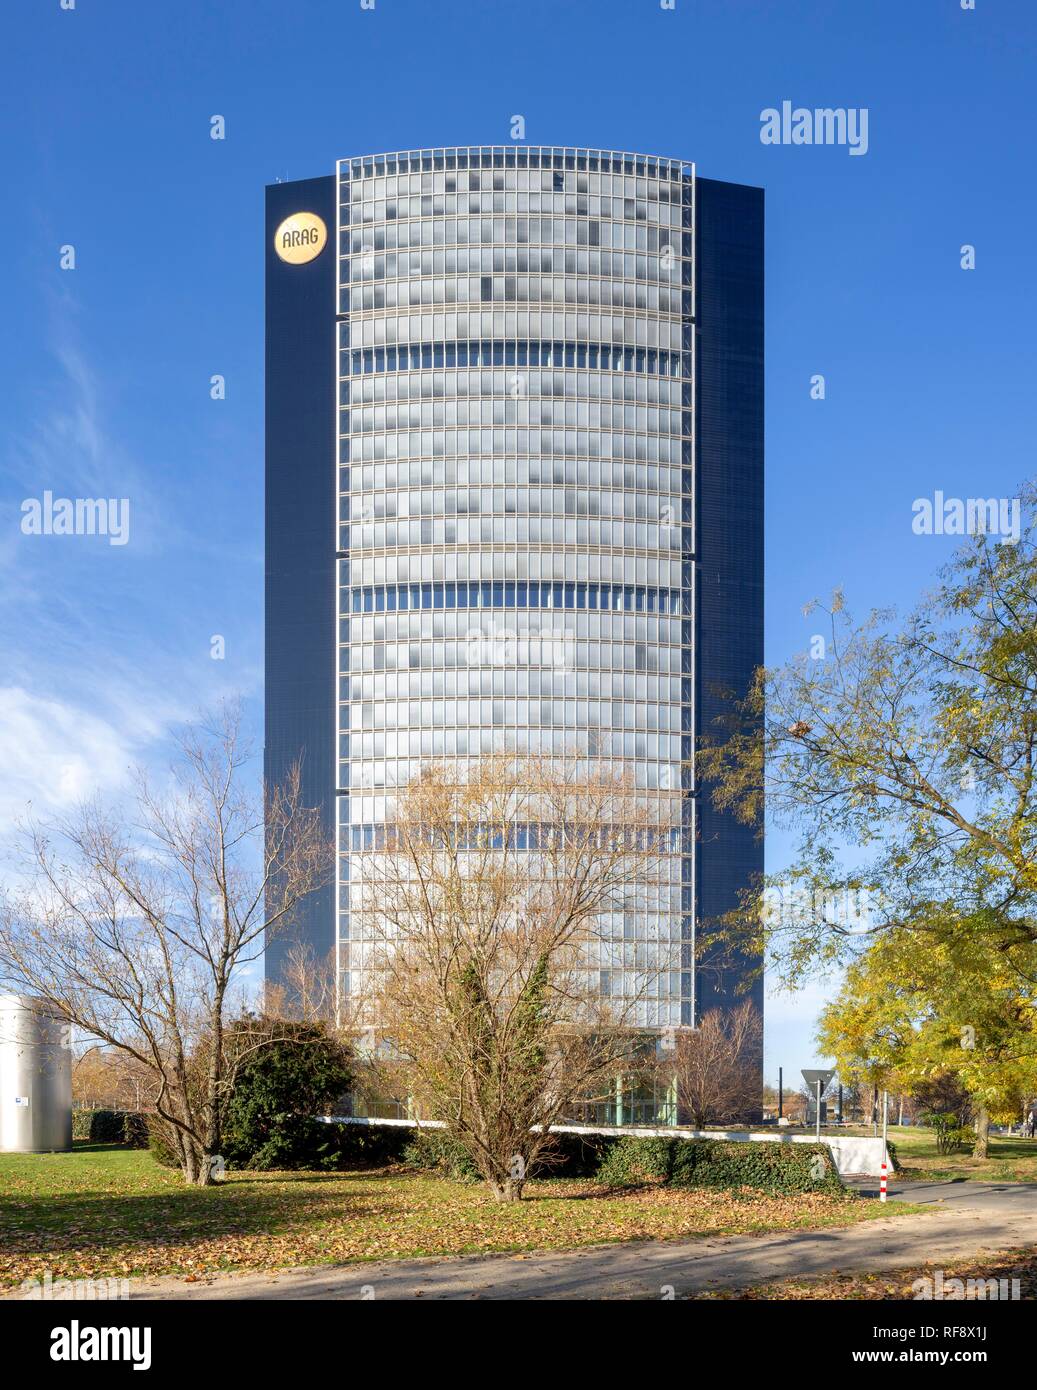 ARAG Tower, sede de seguros ARAG, arquitecto Norman Foster, Mörsenbroich, Düsseldorf, Renania, Renania del Norte-Westfalia Foto de stock